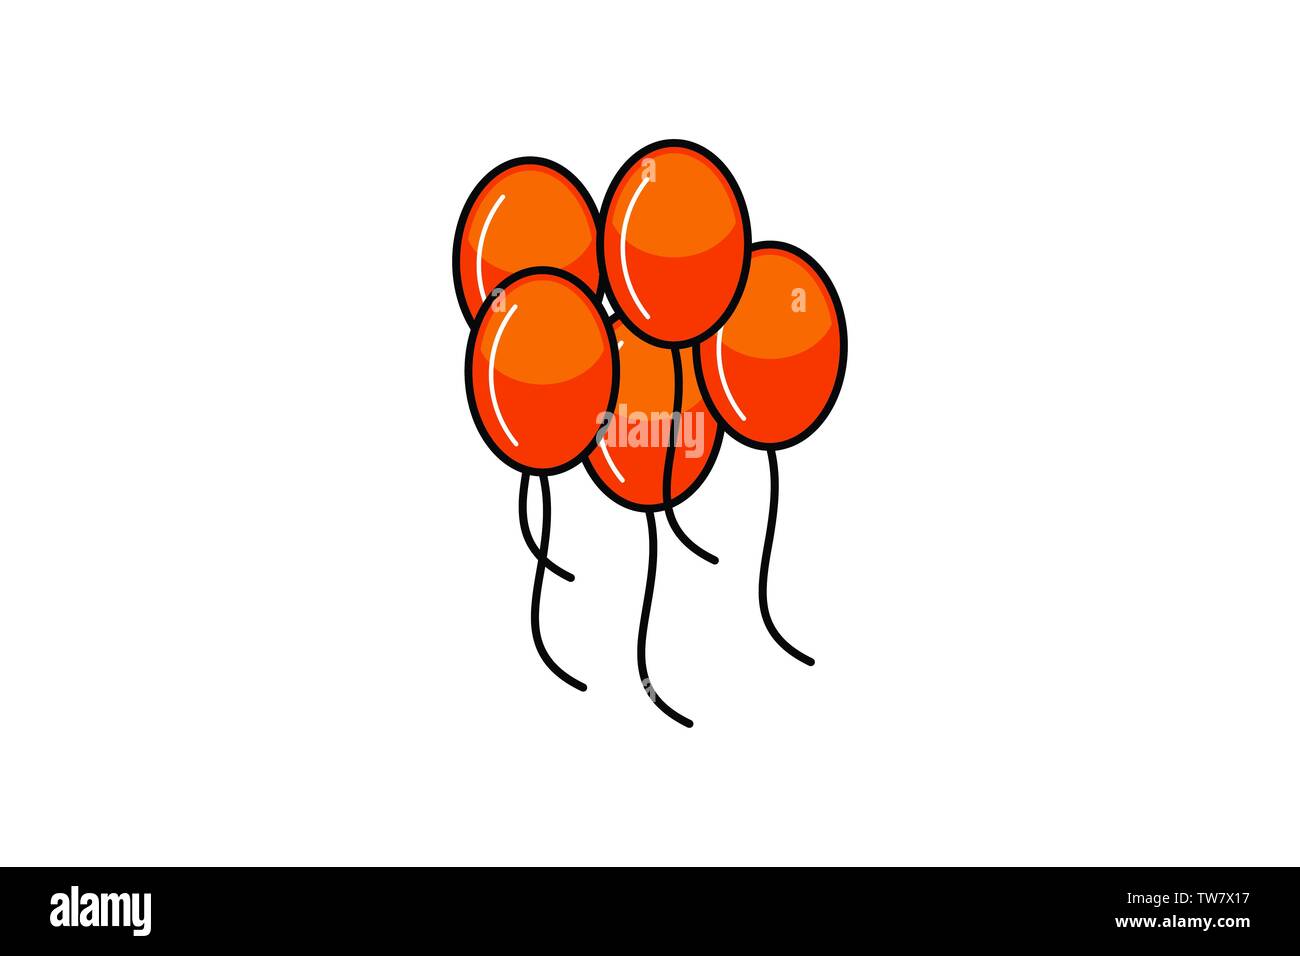 Balloon Logos | 132 Custom Balloon Logo Designs